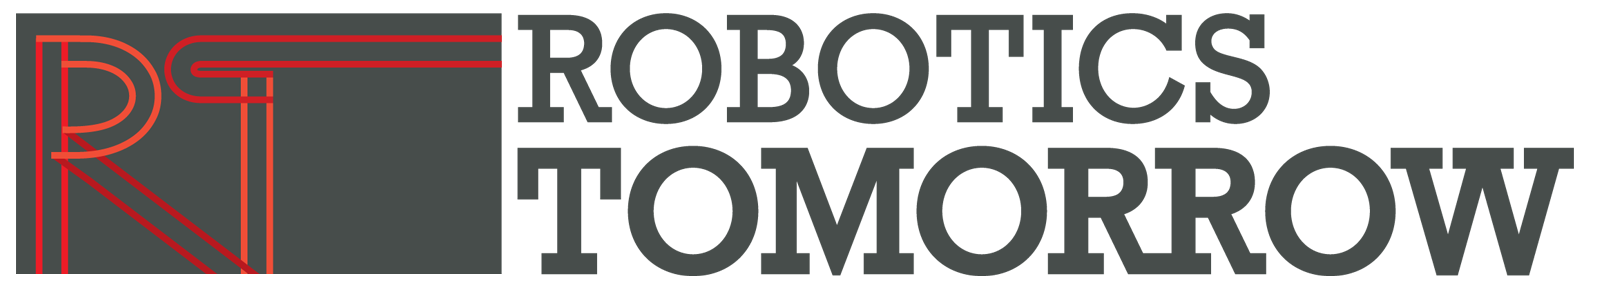 robotics-tomorrow-logo2016.png